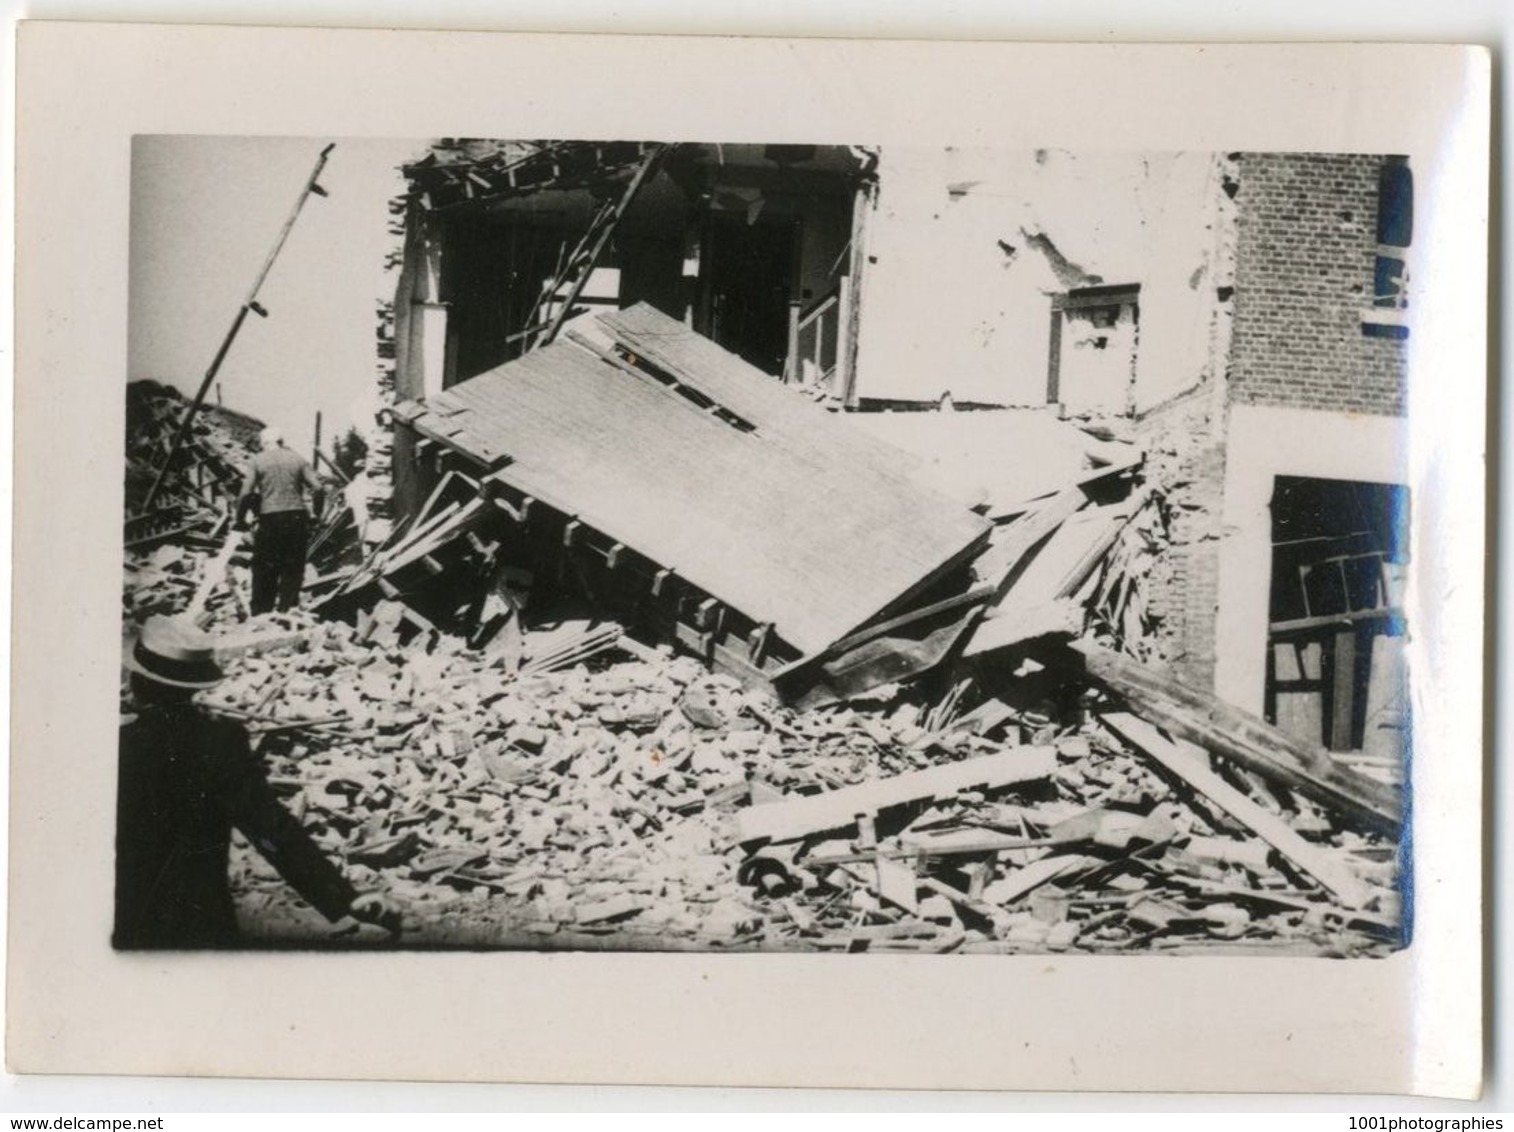 WW2, Bruxelles. Bombardements à Bruxelles, nombreuses annotations,, voir ce dessous. 47 Tirages originaux  FG1478